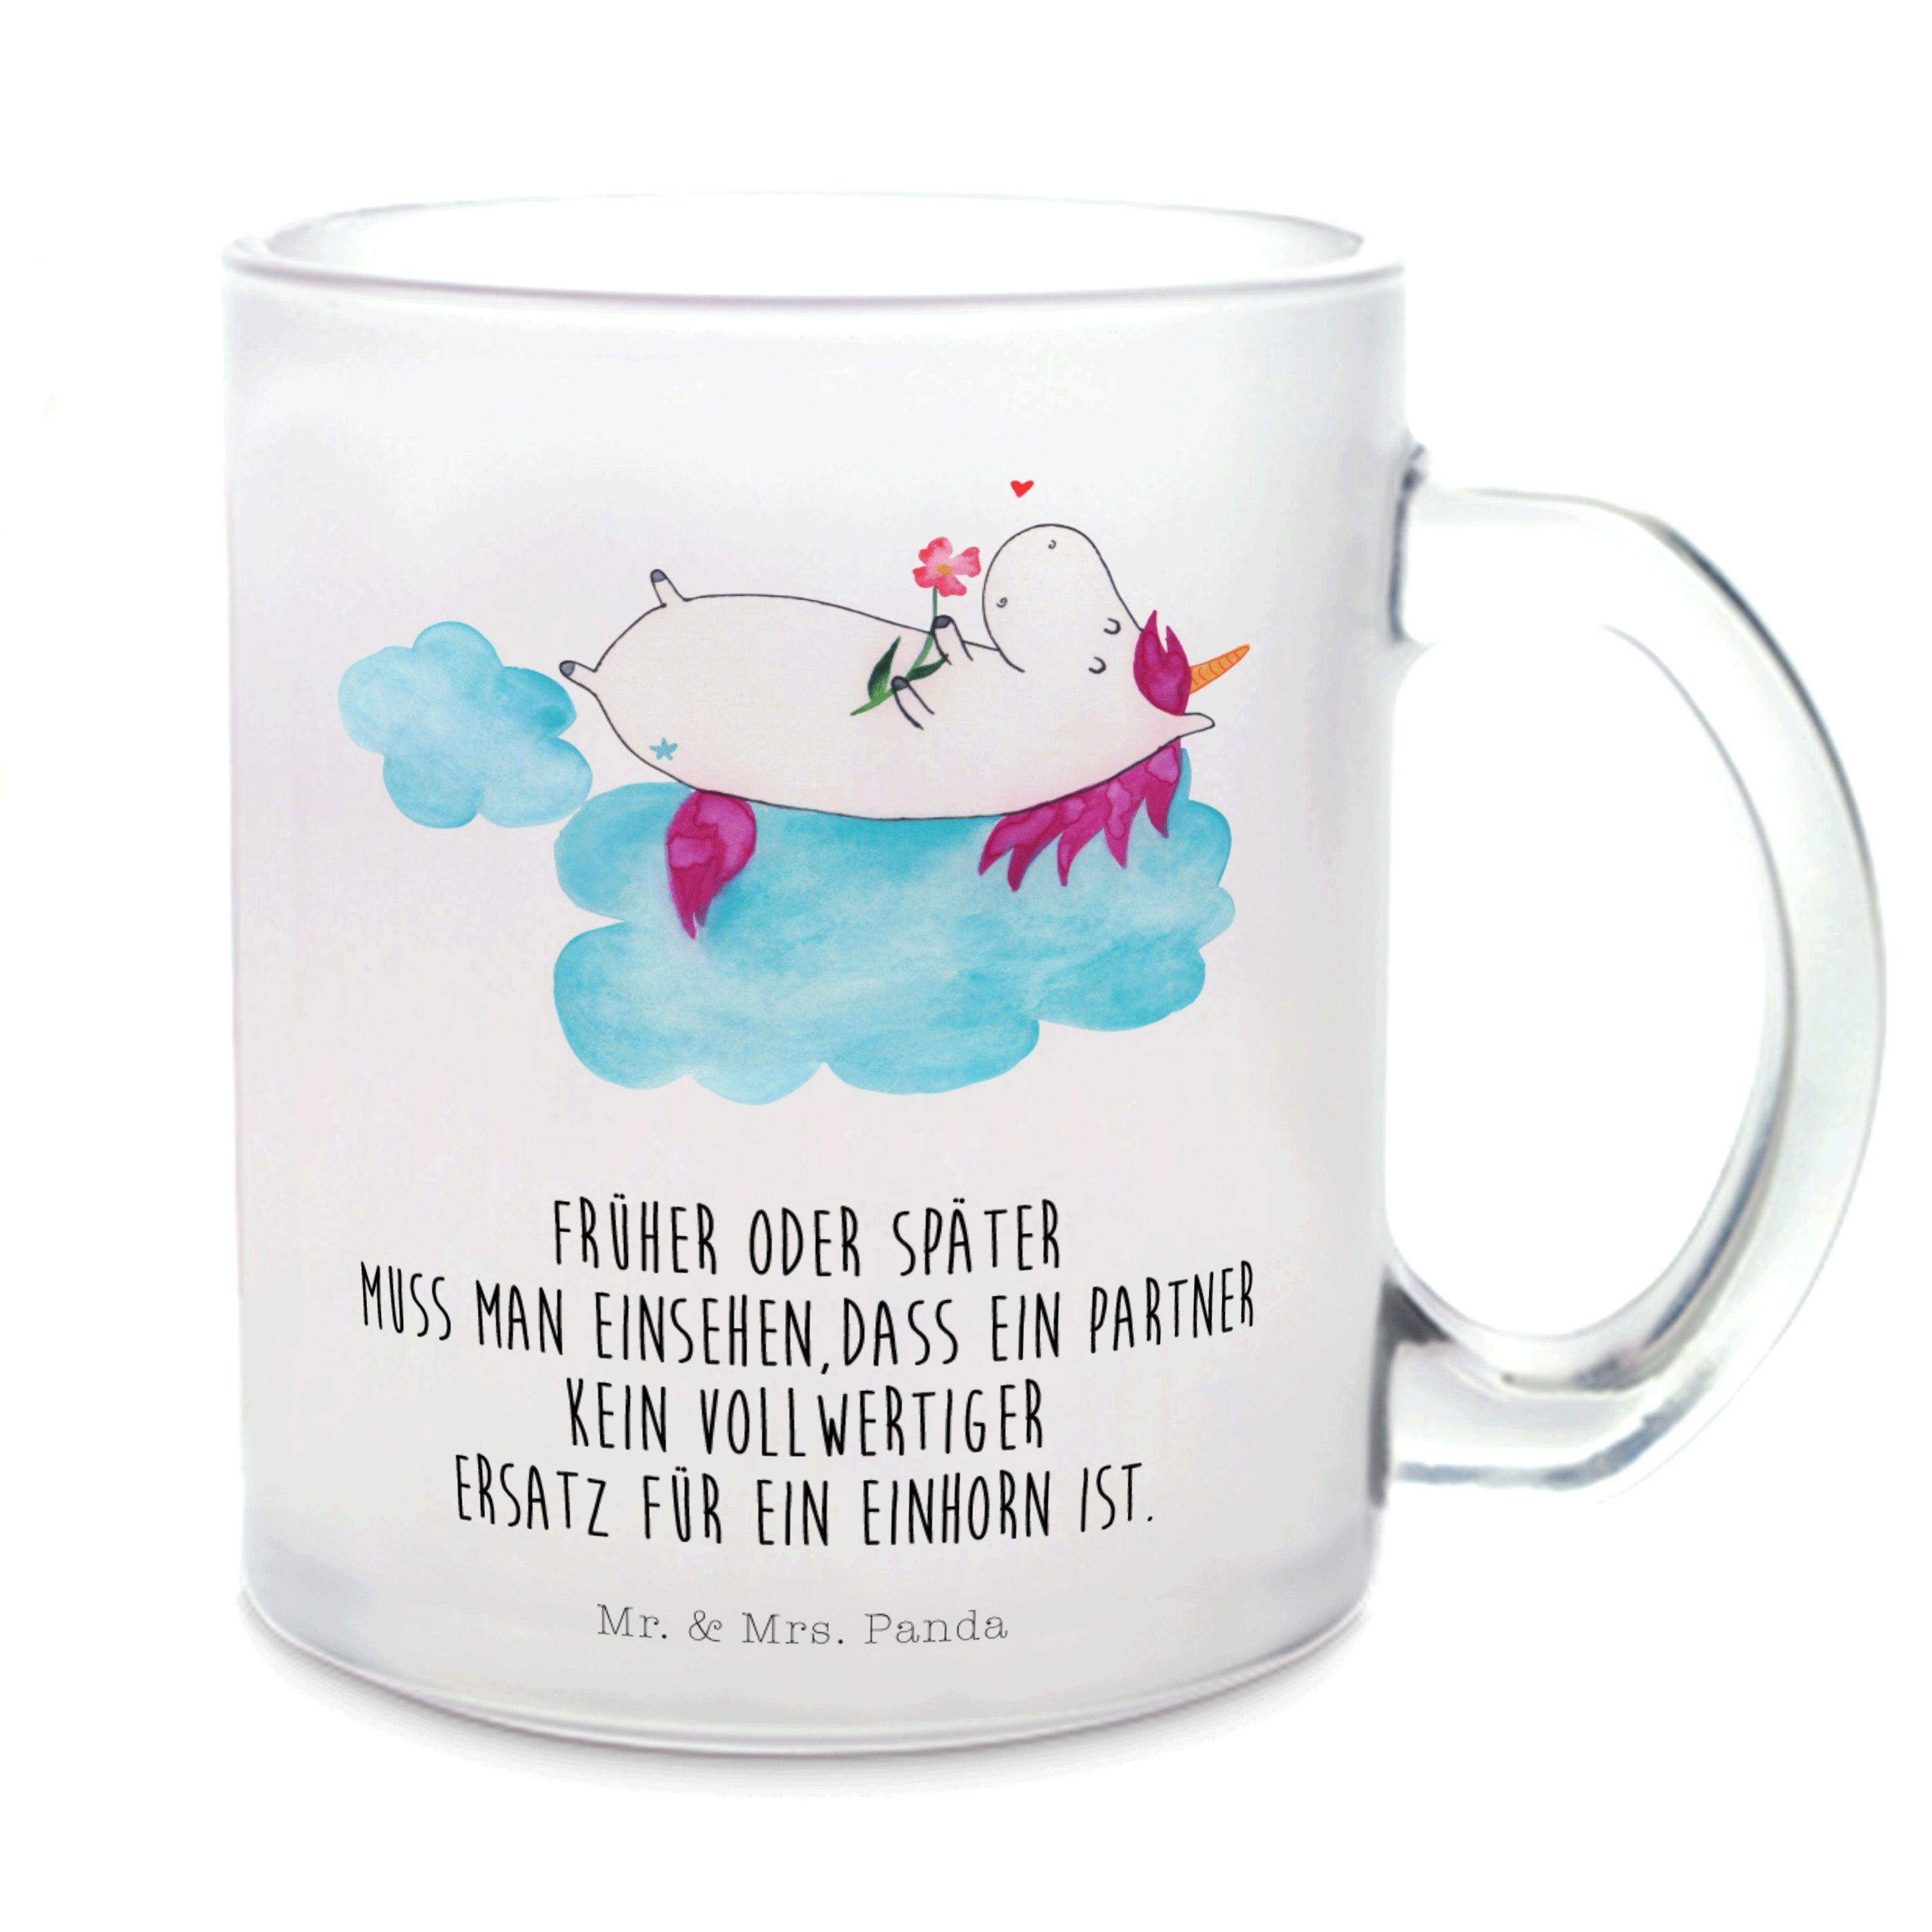 Mr. & Mrs. Panda Teeglas Einhorn Verliebt - Transparent - Geschenk, Teetasse, Liebe, Glas Teet, Premium Glas, Edler Aufdruck